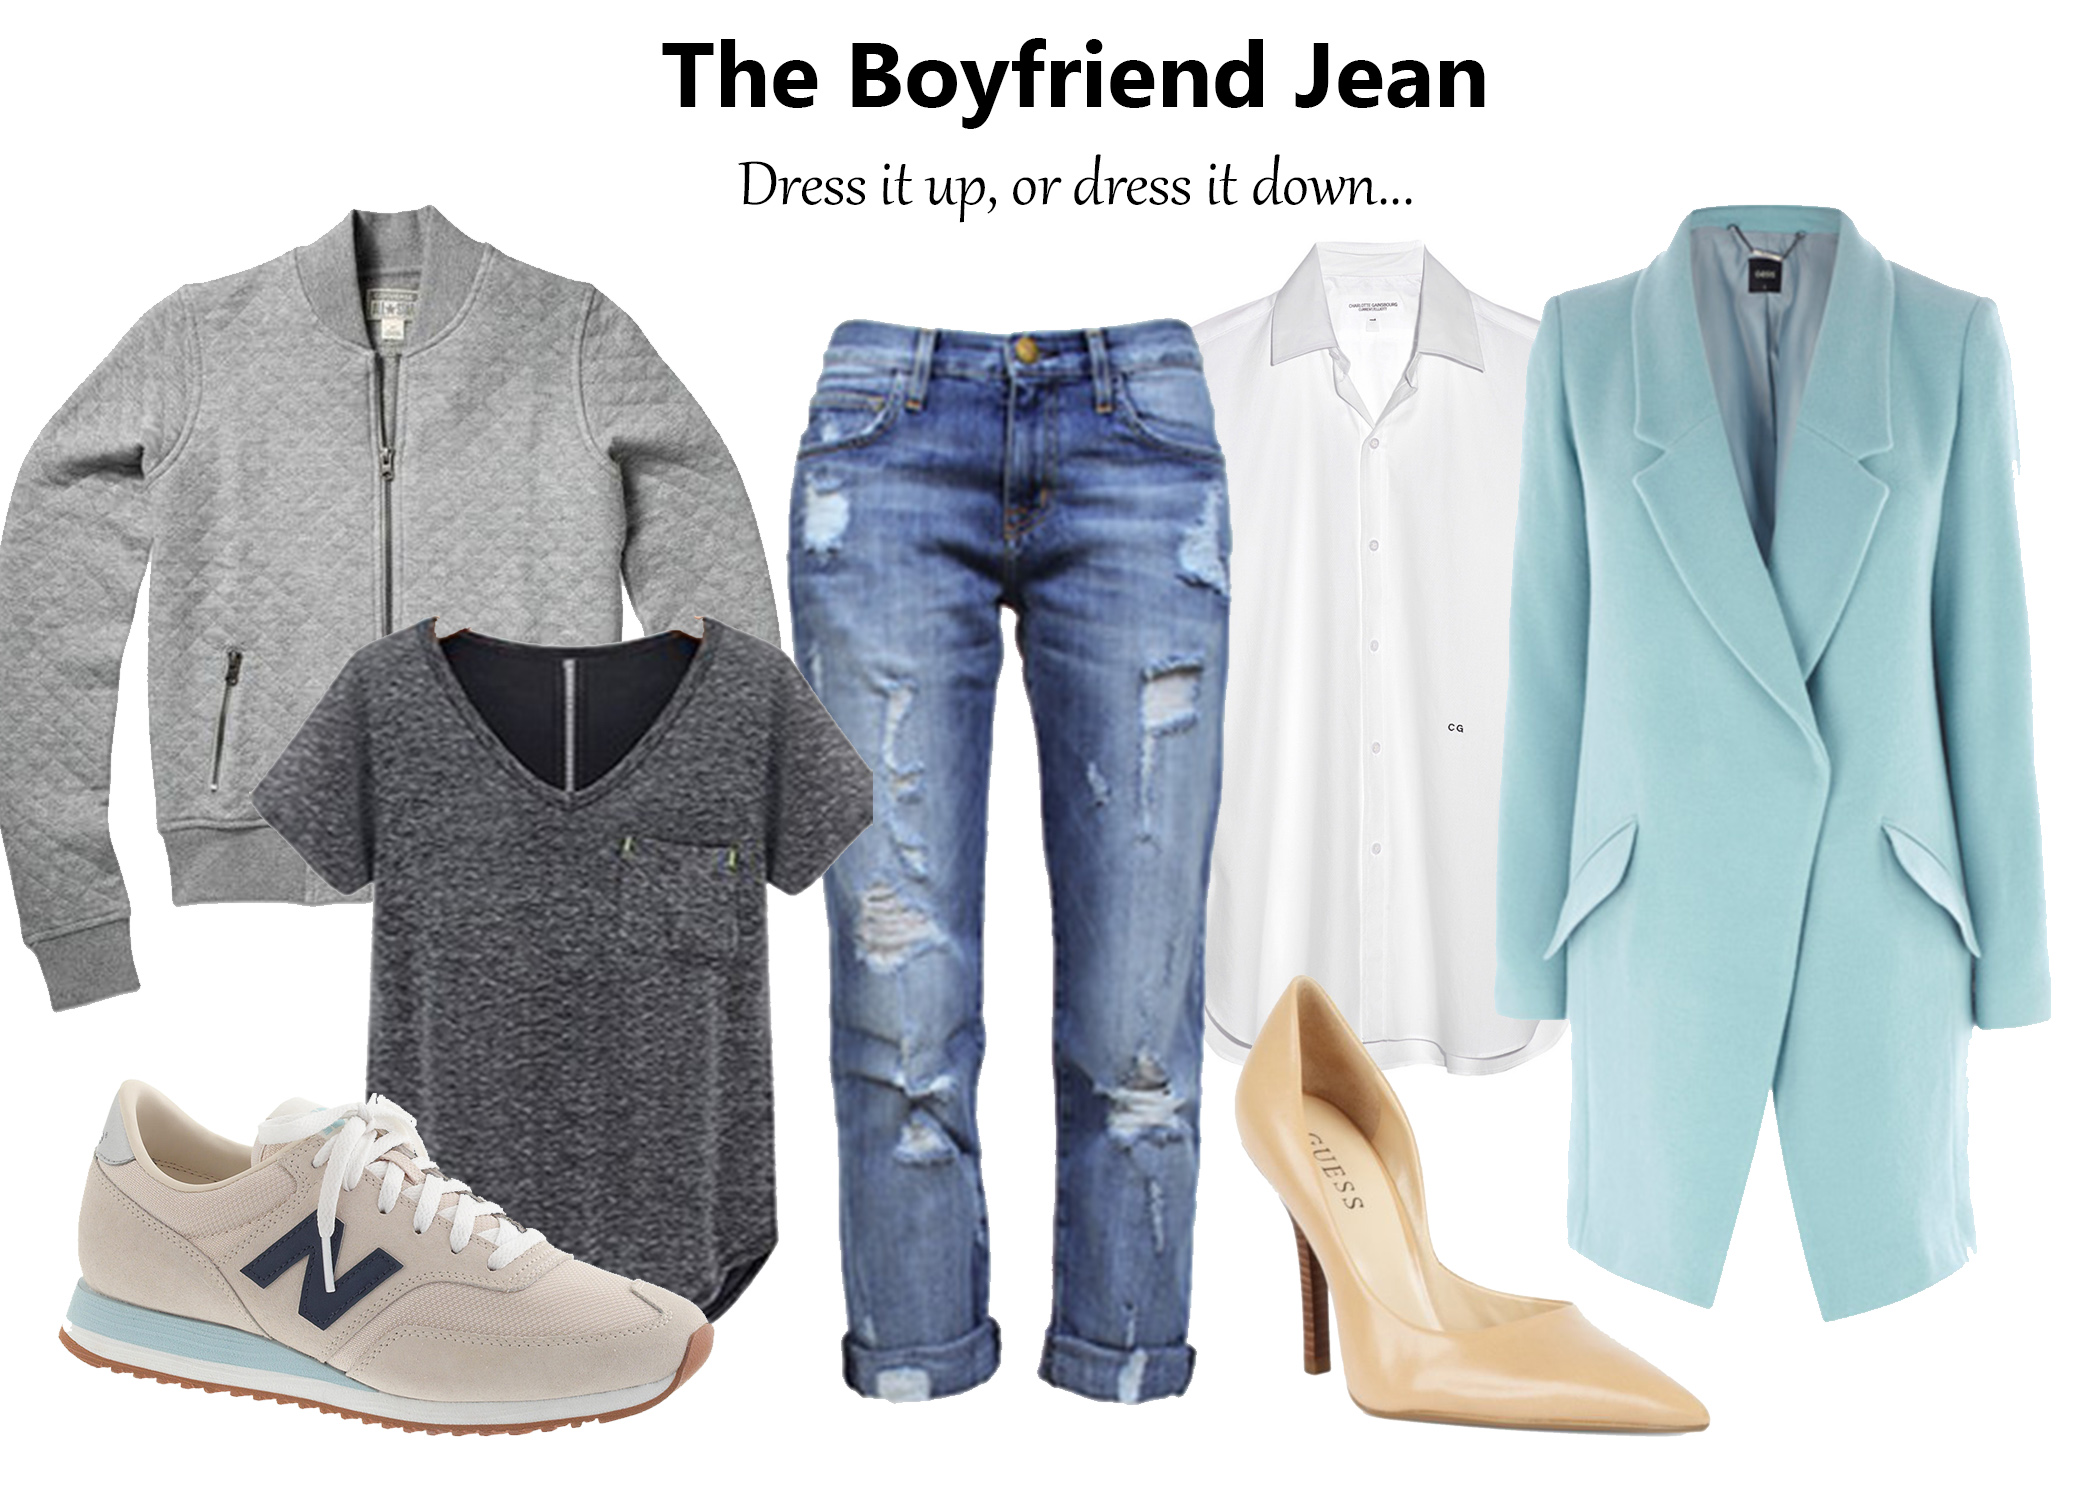 The Versatile Boyfriend Jean